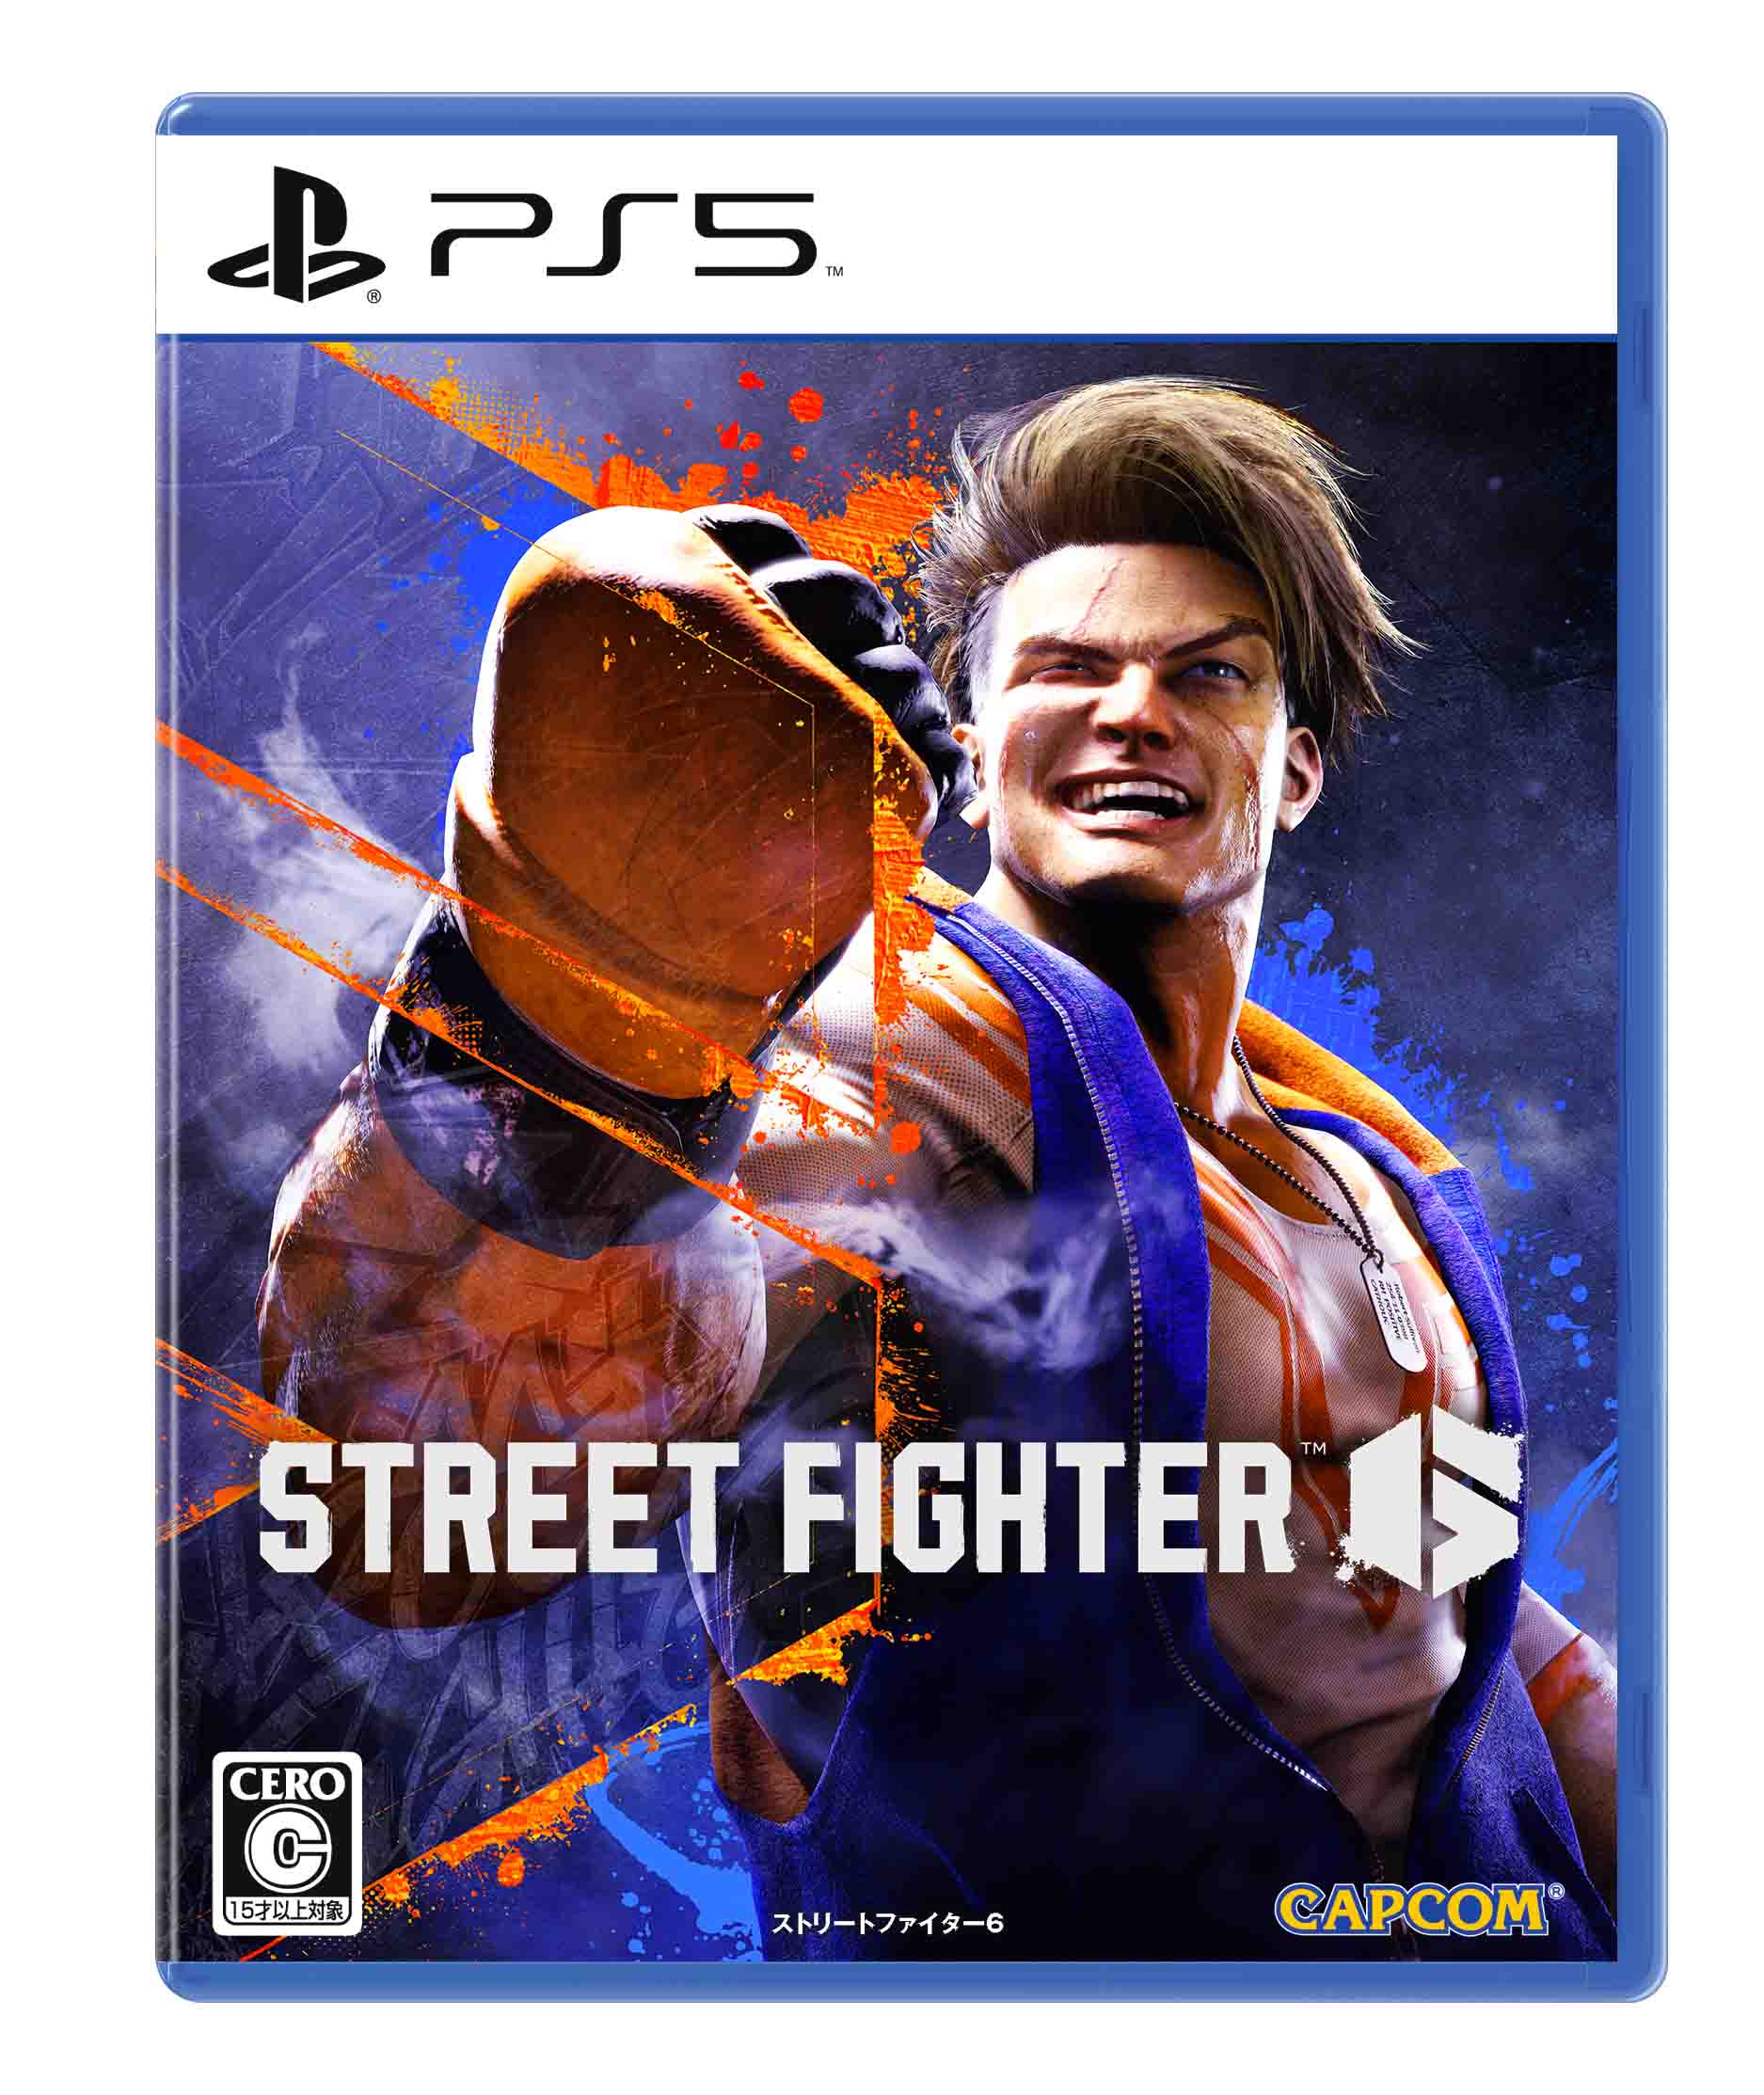 イーカプコン |【PS5】Street Fighter Mad Gear Box 数量限定特典付(Mad Gear Box(PS5)): ゲームソフト  CAPCOM公式通販サイト